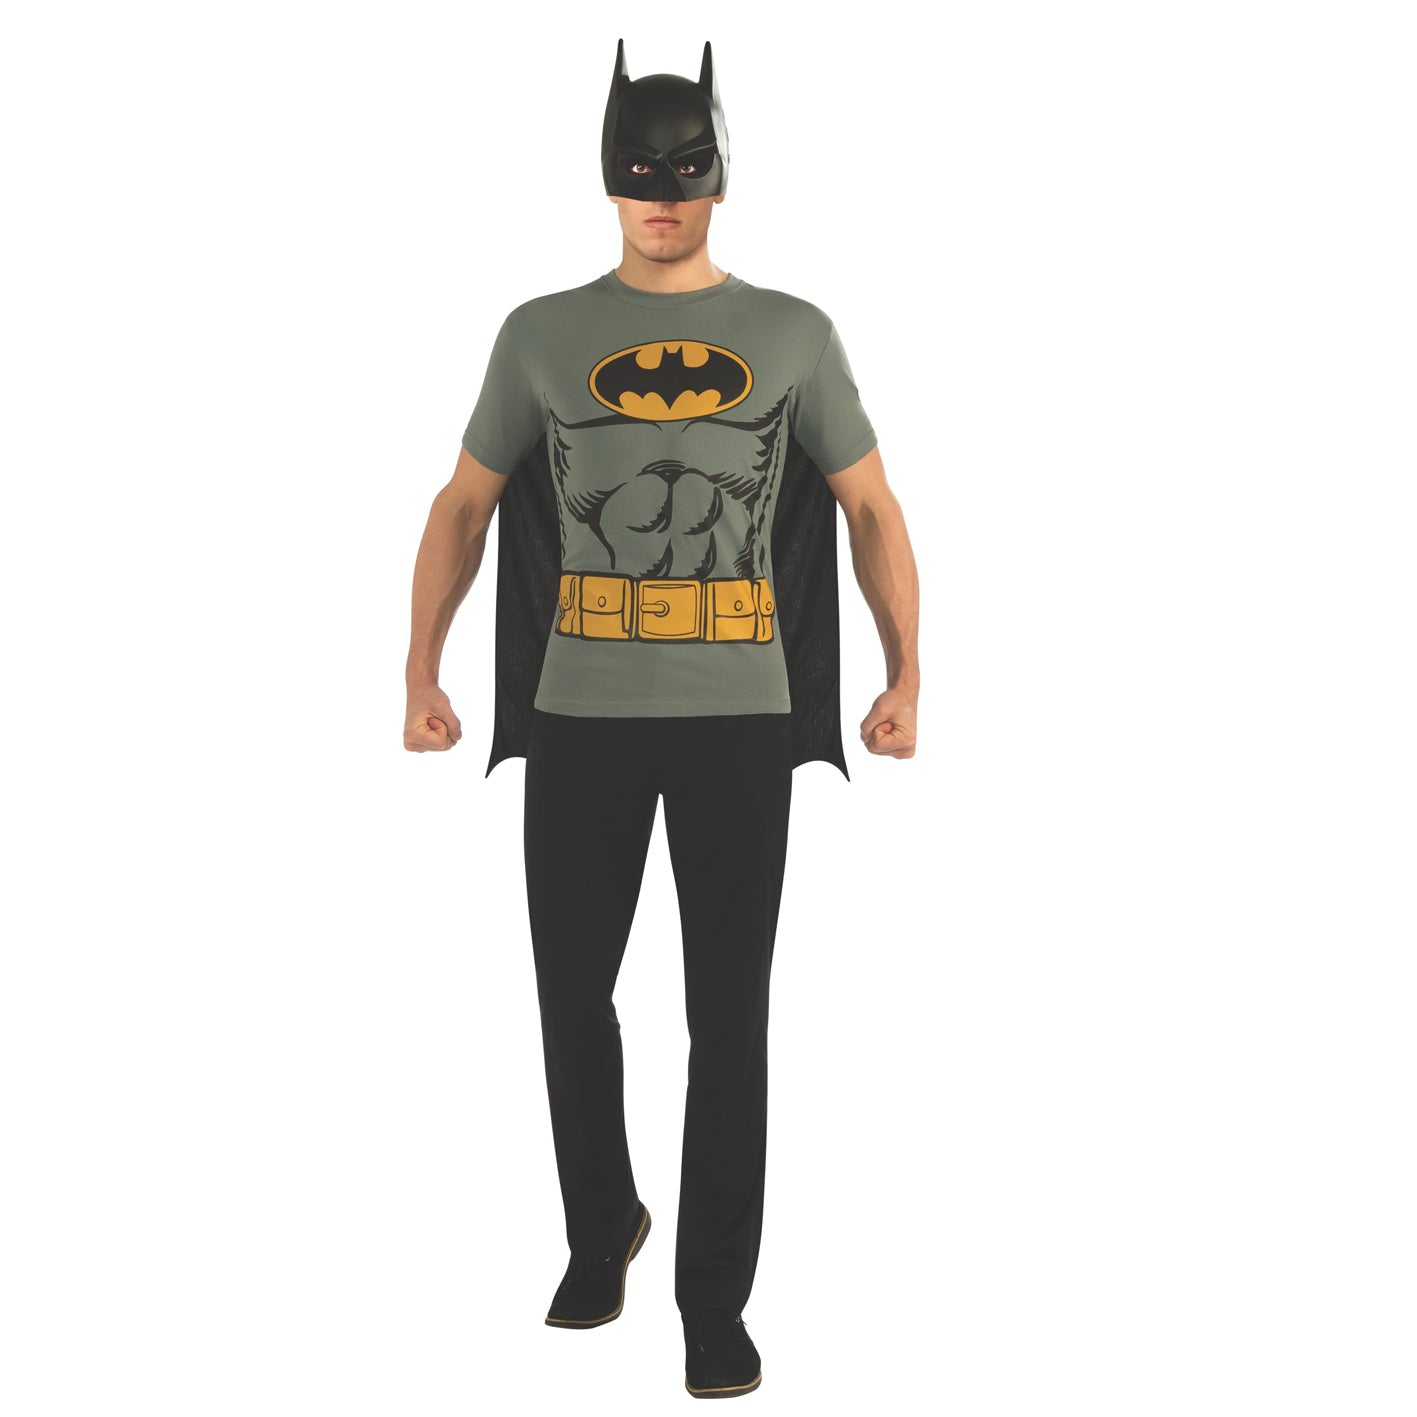 Batman T-shirt Costume